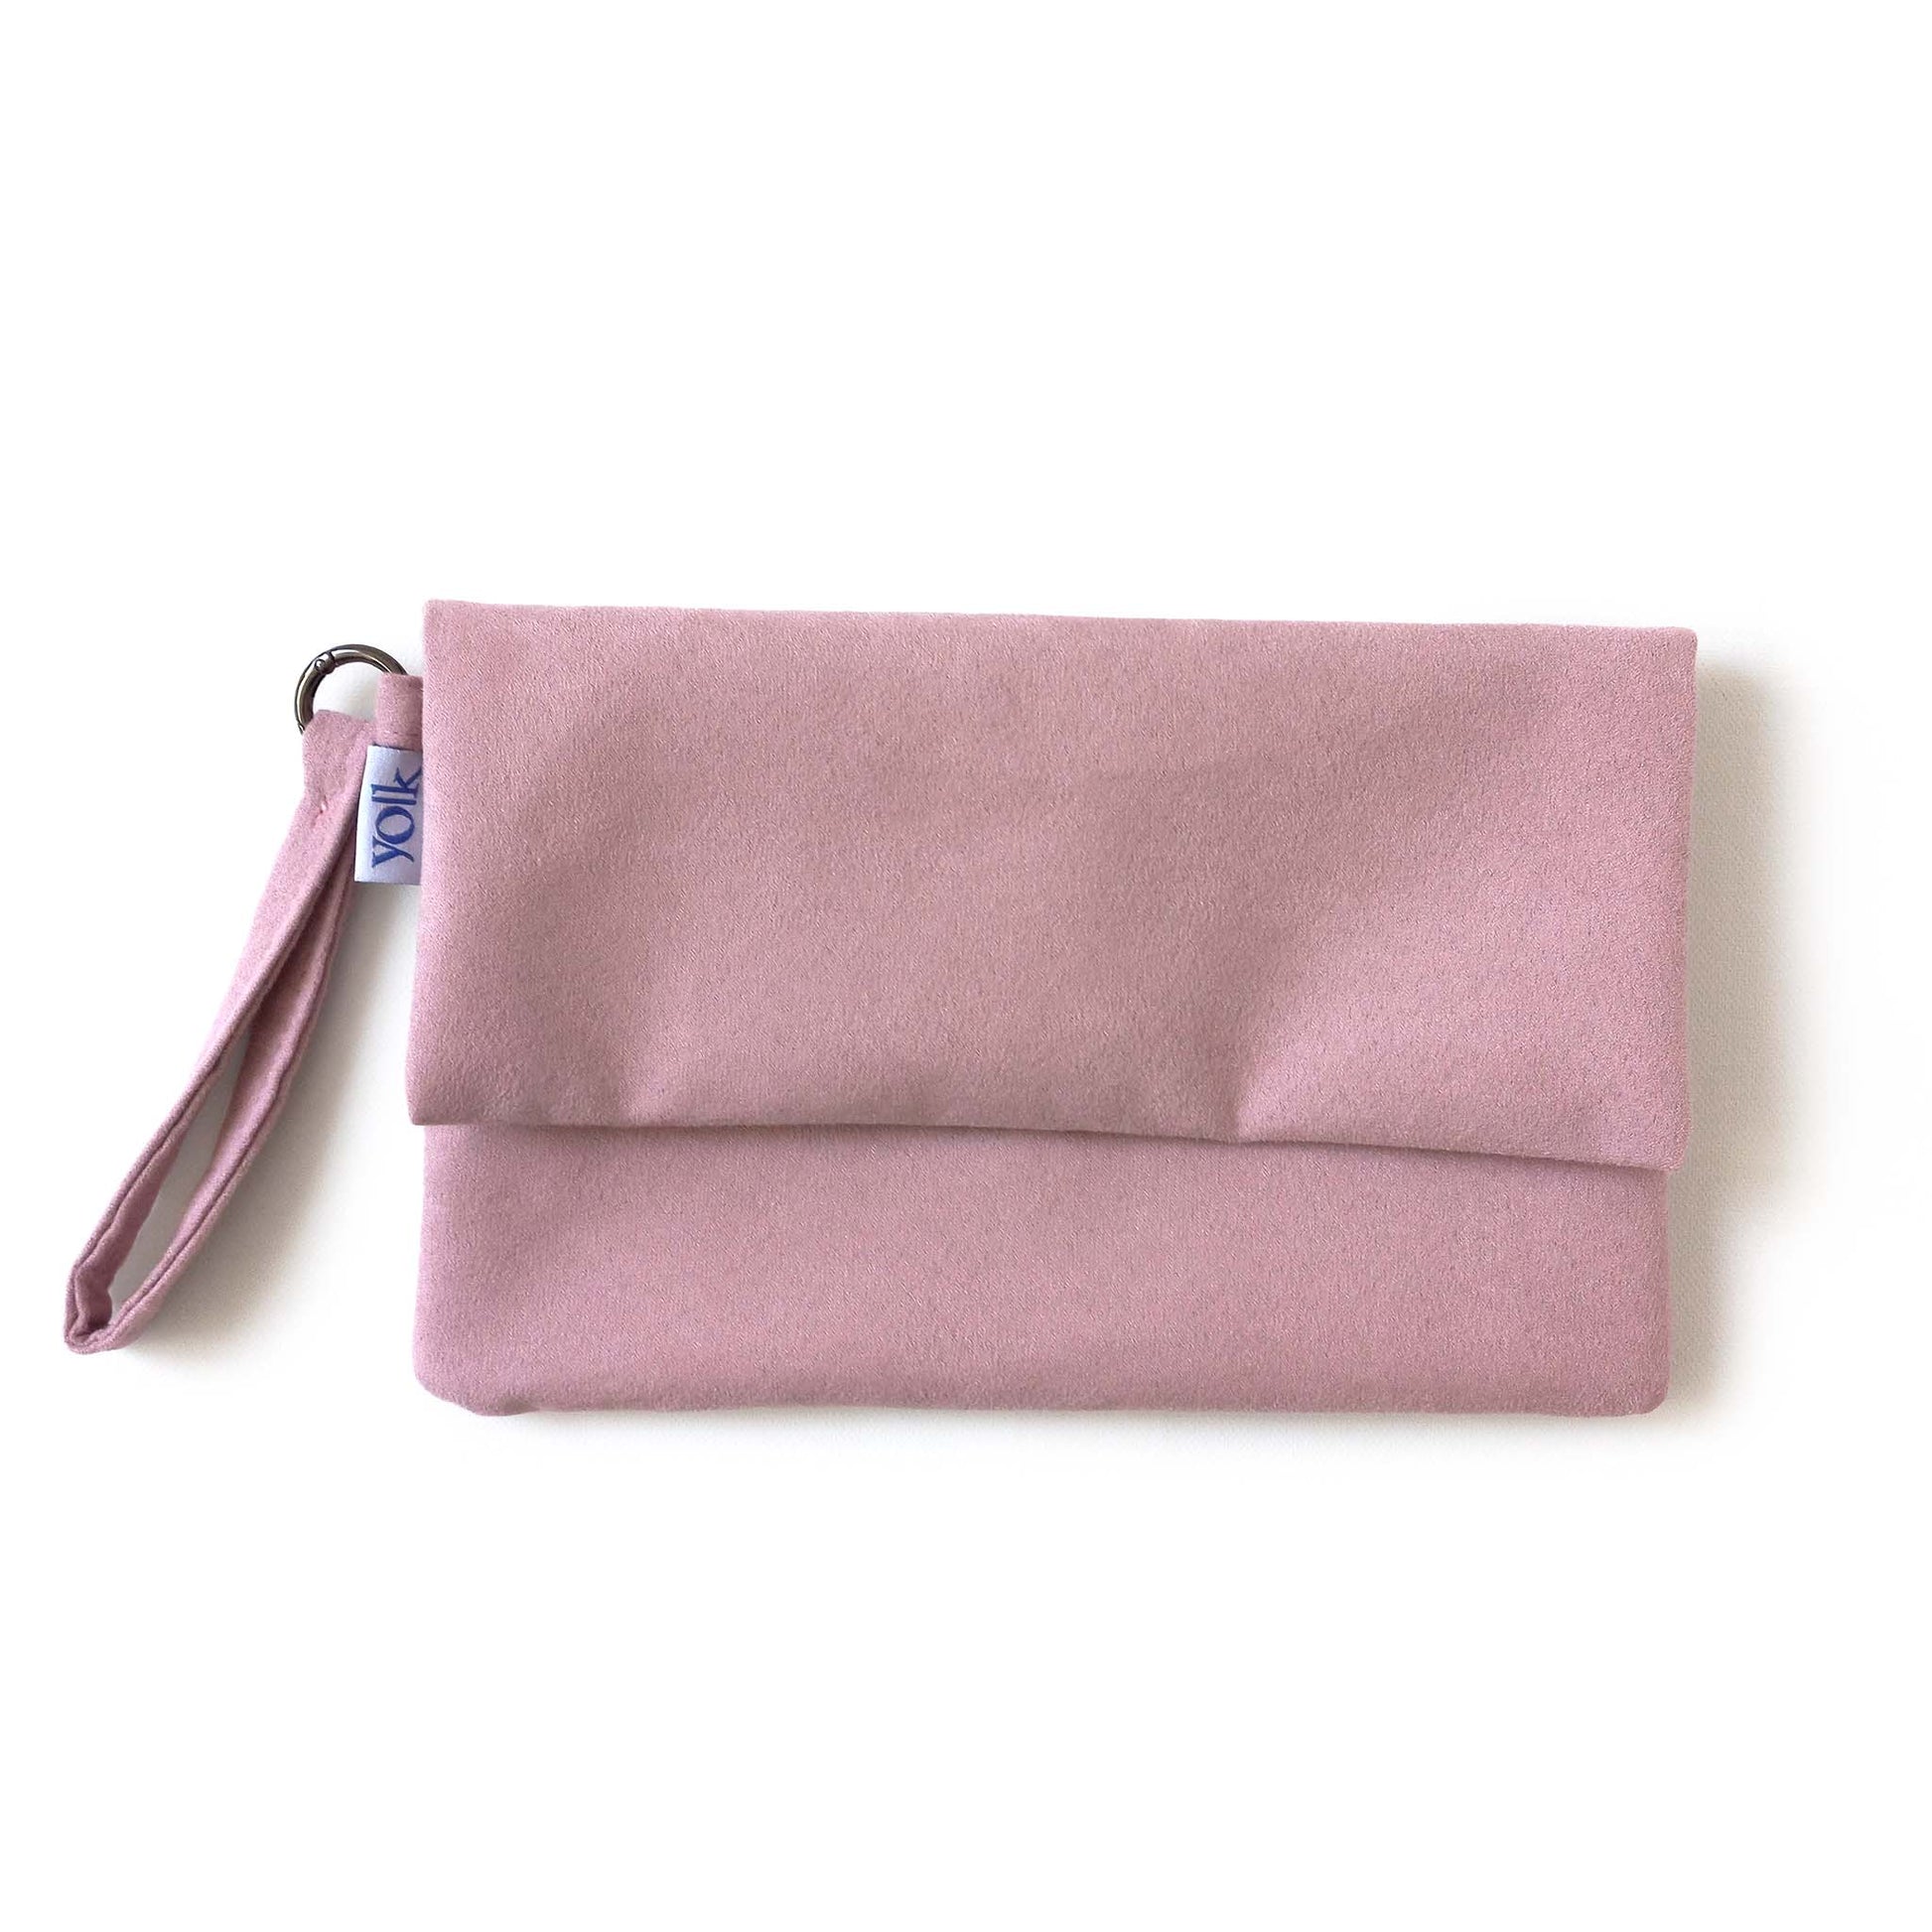 Soft pink color foldover clutch bag